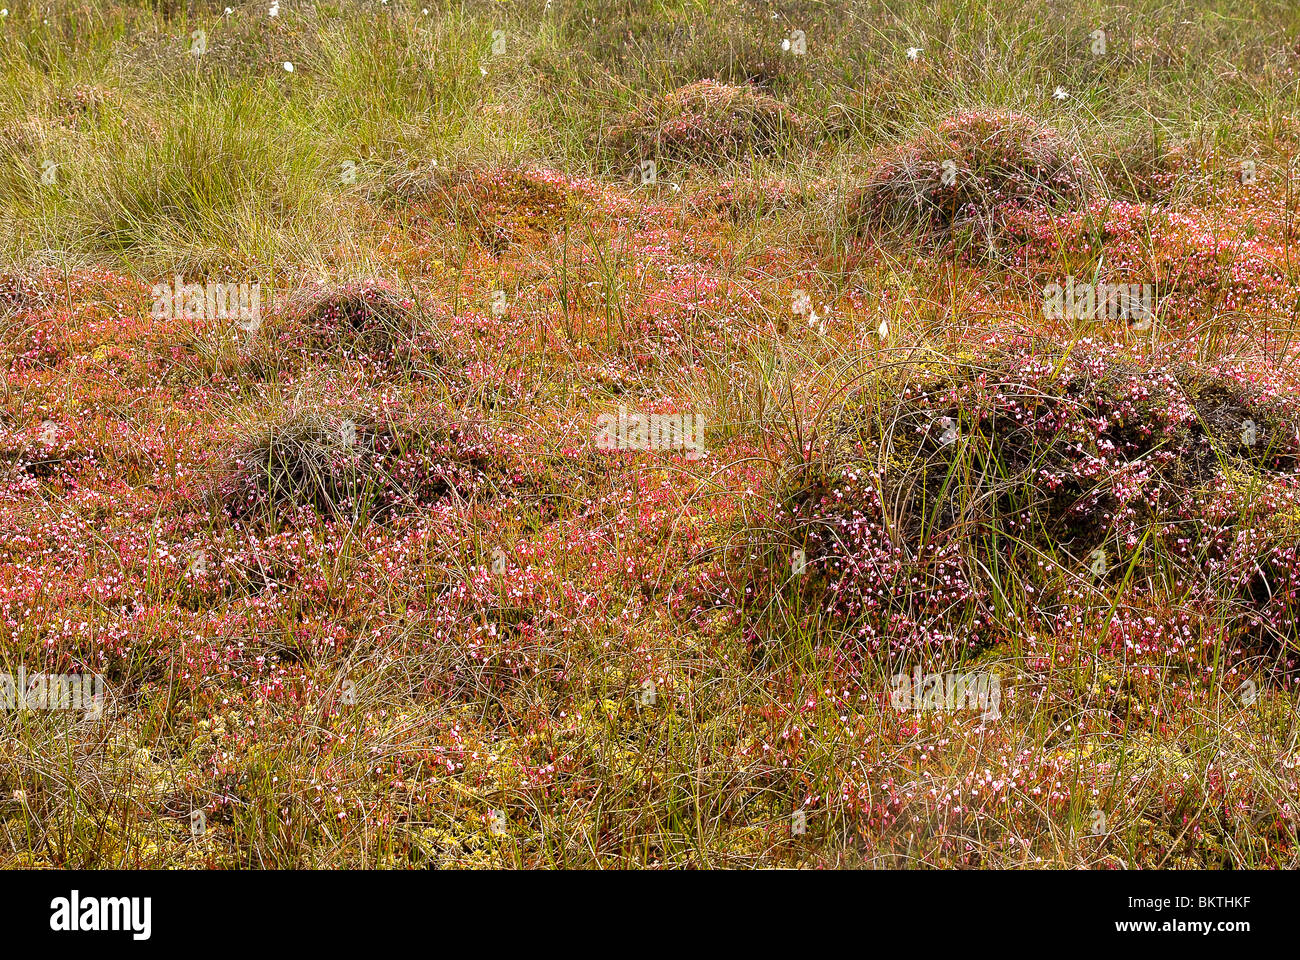 Overzicht van hoogveen vegetatie met bloeiende Kleine veenbes. Stock Photo